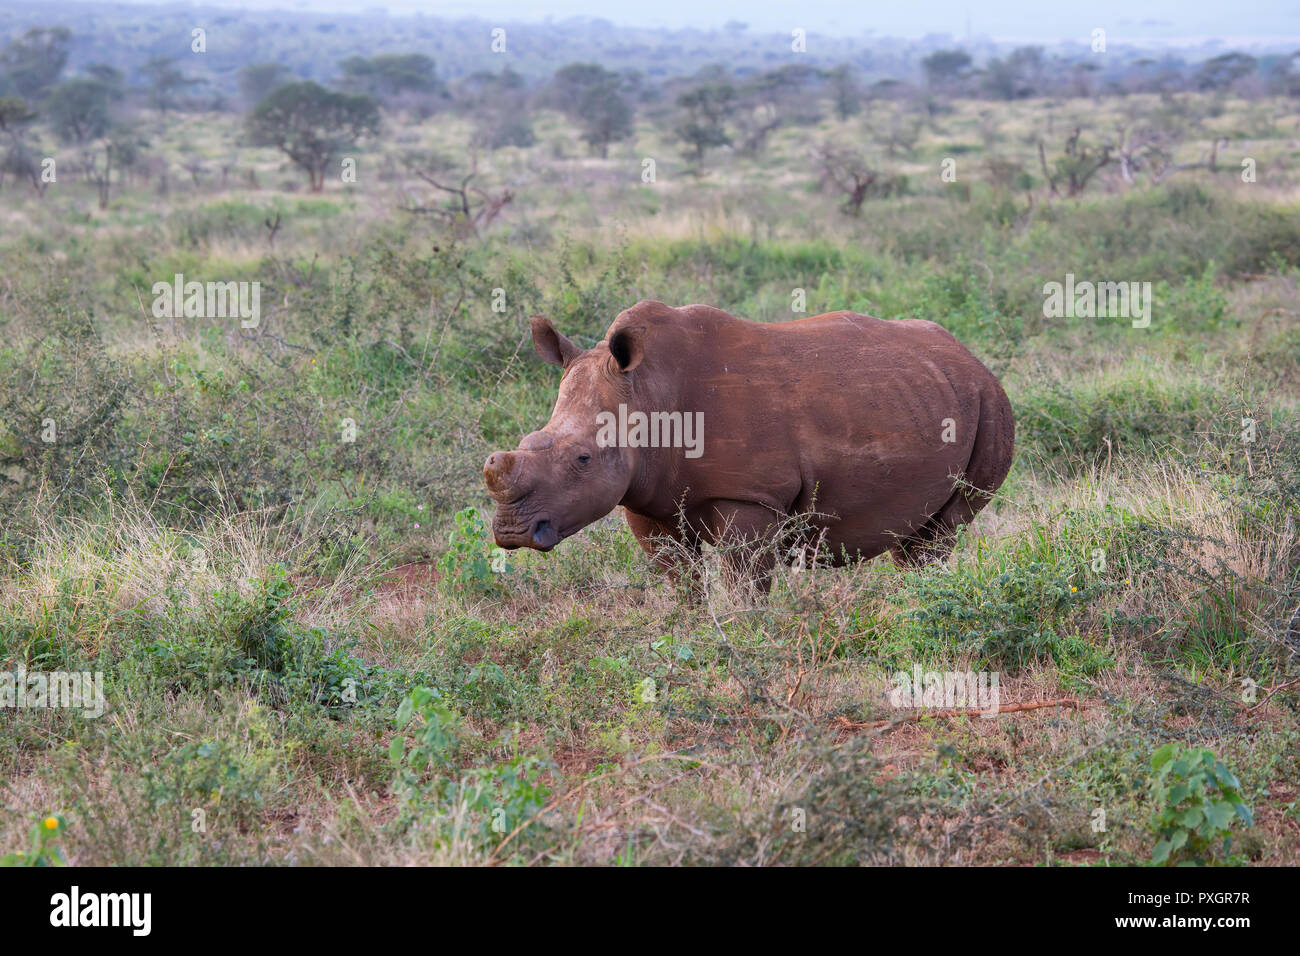 Weißes Nashorn Rhinocerotidae) mit Hörnern entfernt Angriff von Wilderern oder Trophäenjäger in Südafrika zu verhindern. Stockfoto